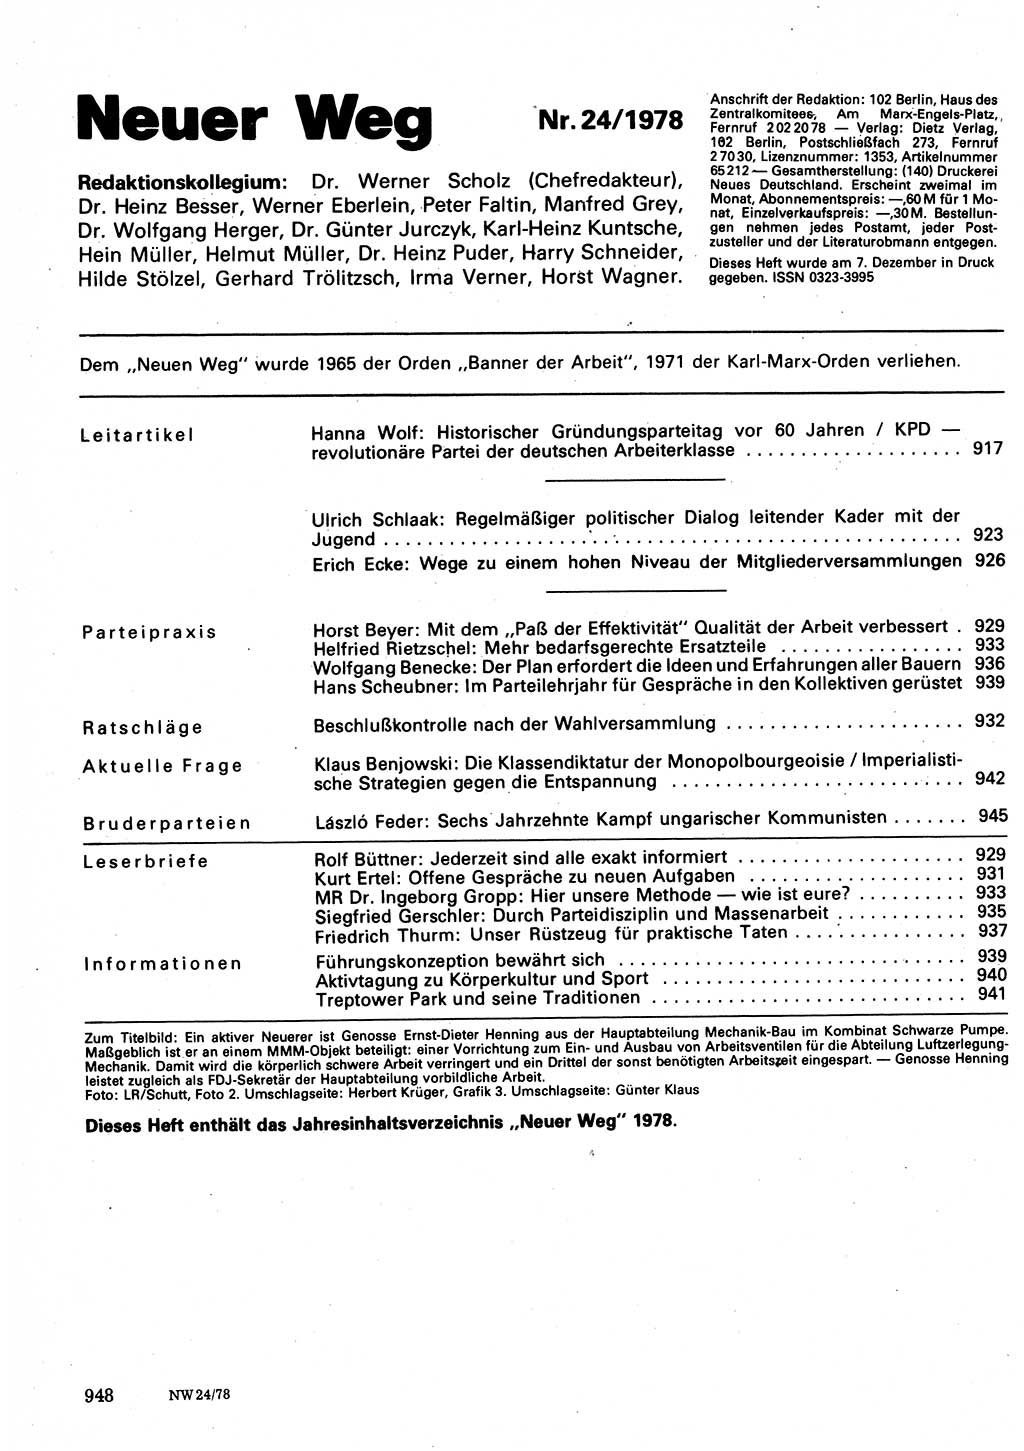 Neuer Weg (NW), Organ des Zentralkomitees (ZK) der SED (Sozialistische Einheitspartei Deutschlands) für Fragen des Parteilebens, 33. Jahrgang [Deutsche Demokratische Republik (DDR)] 1978, Seite 948 (NW ZK SED DDR 1978, S. 948)